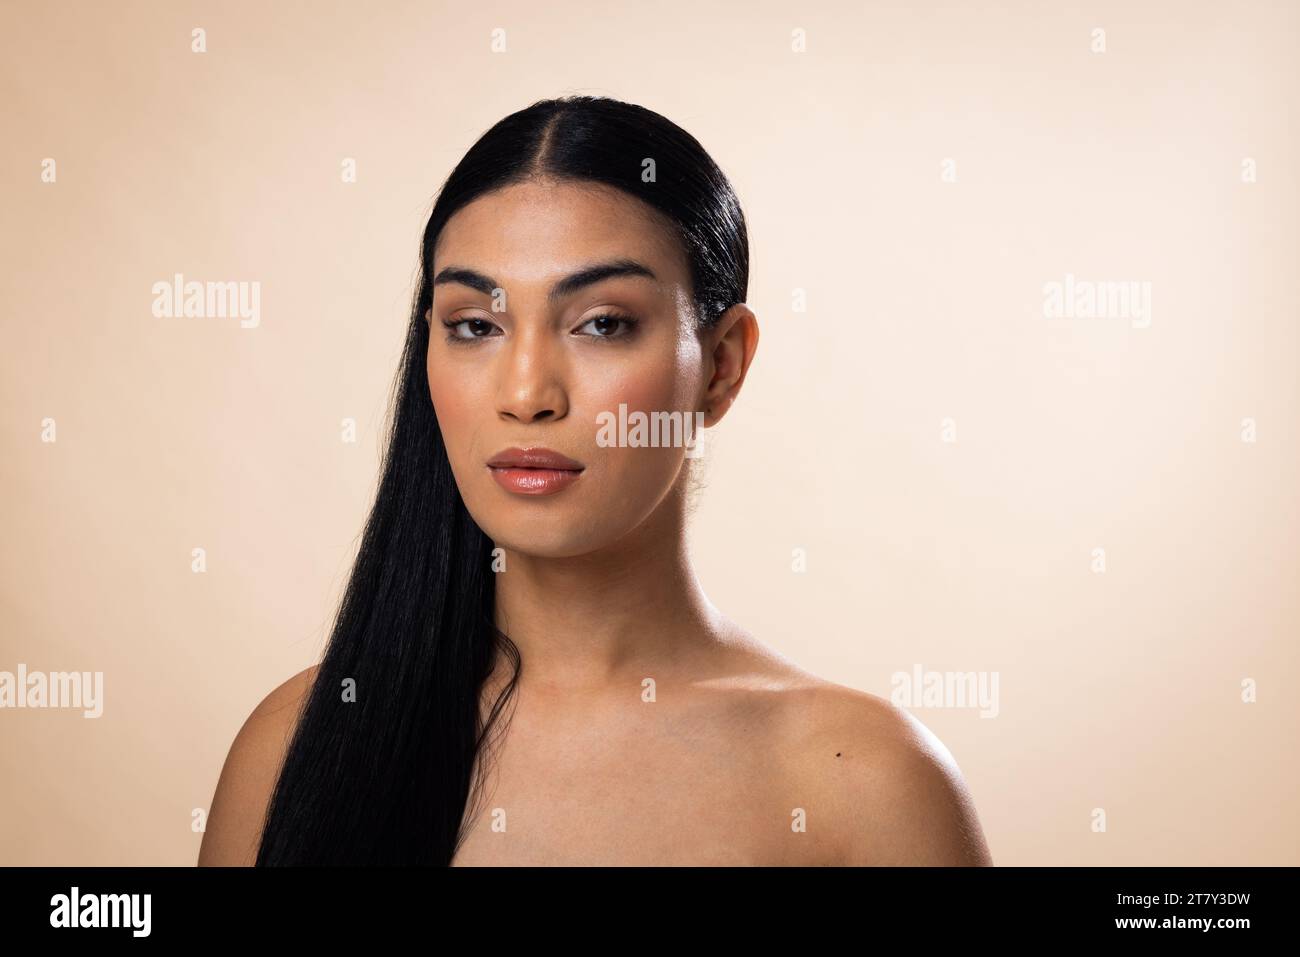 Portrait de femme biracial avec les cheveux foncés et maquillage naturel sur fond brun Banque D'Images